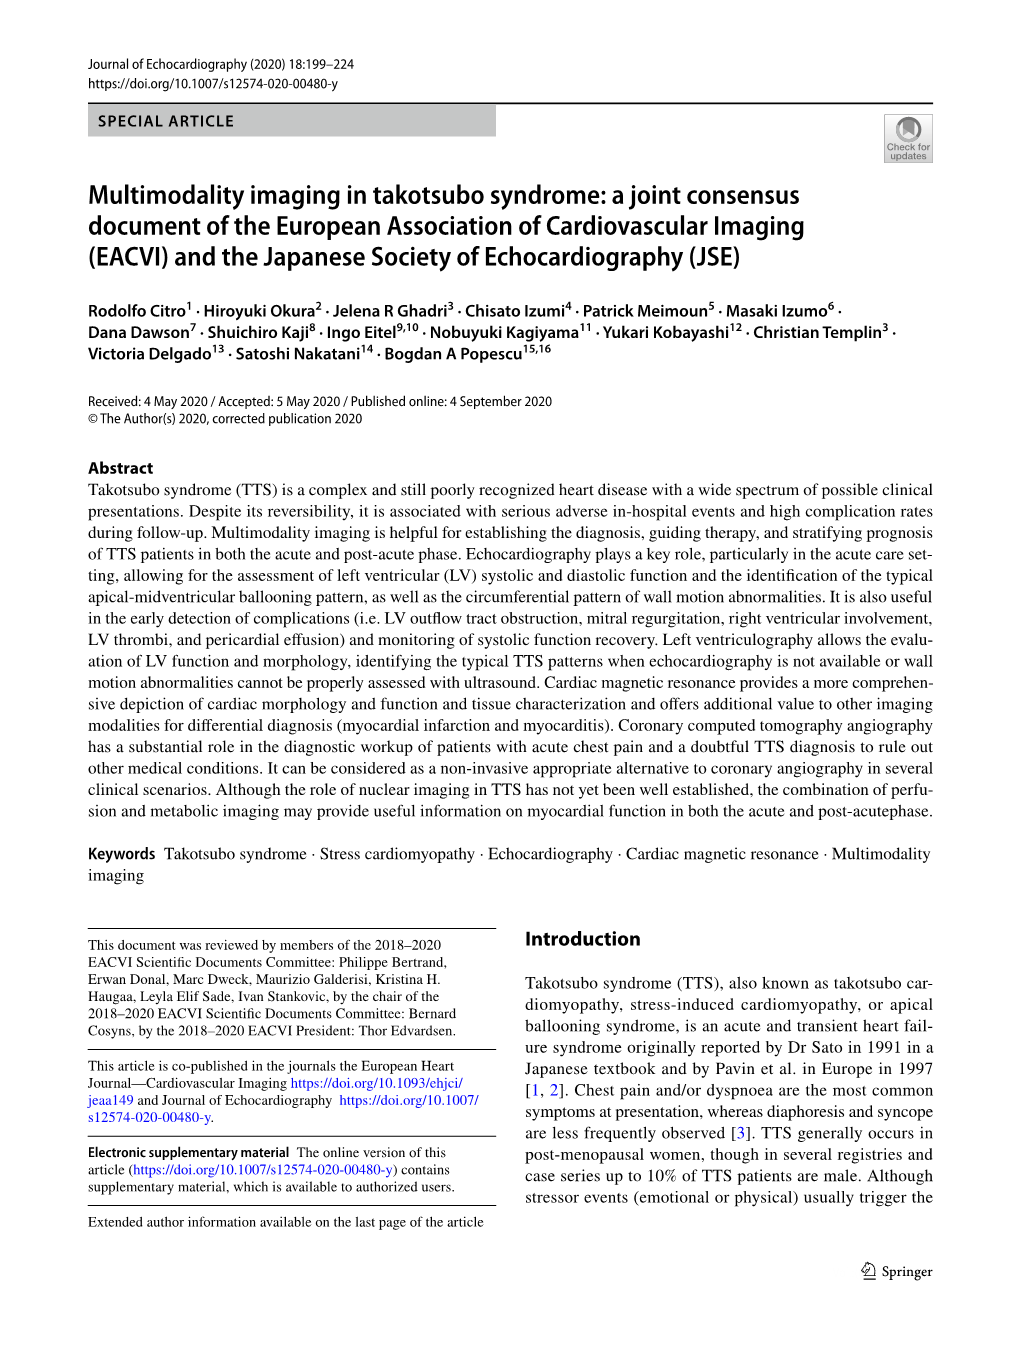 Multimodality Imaging in Takotsubo Syndrome